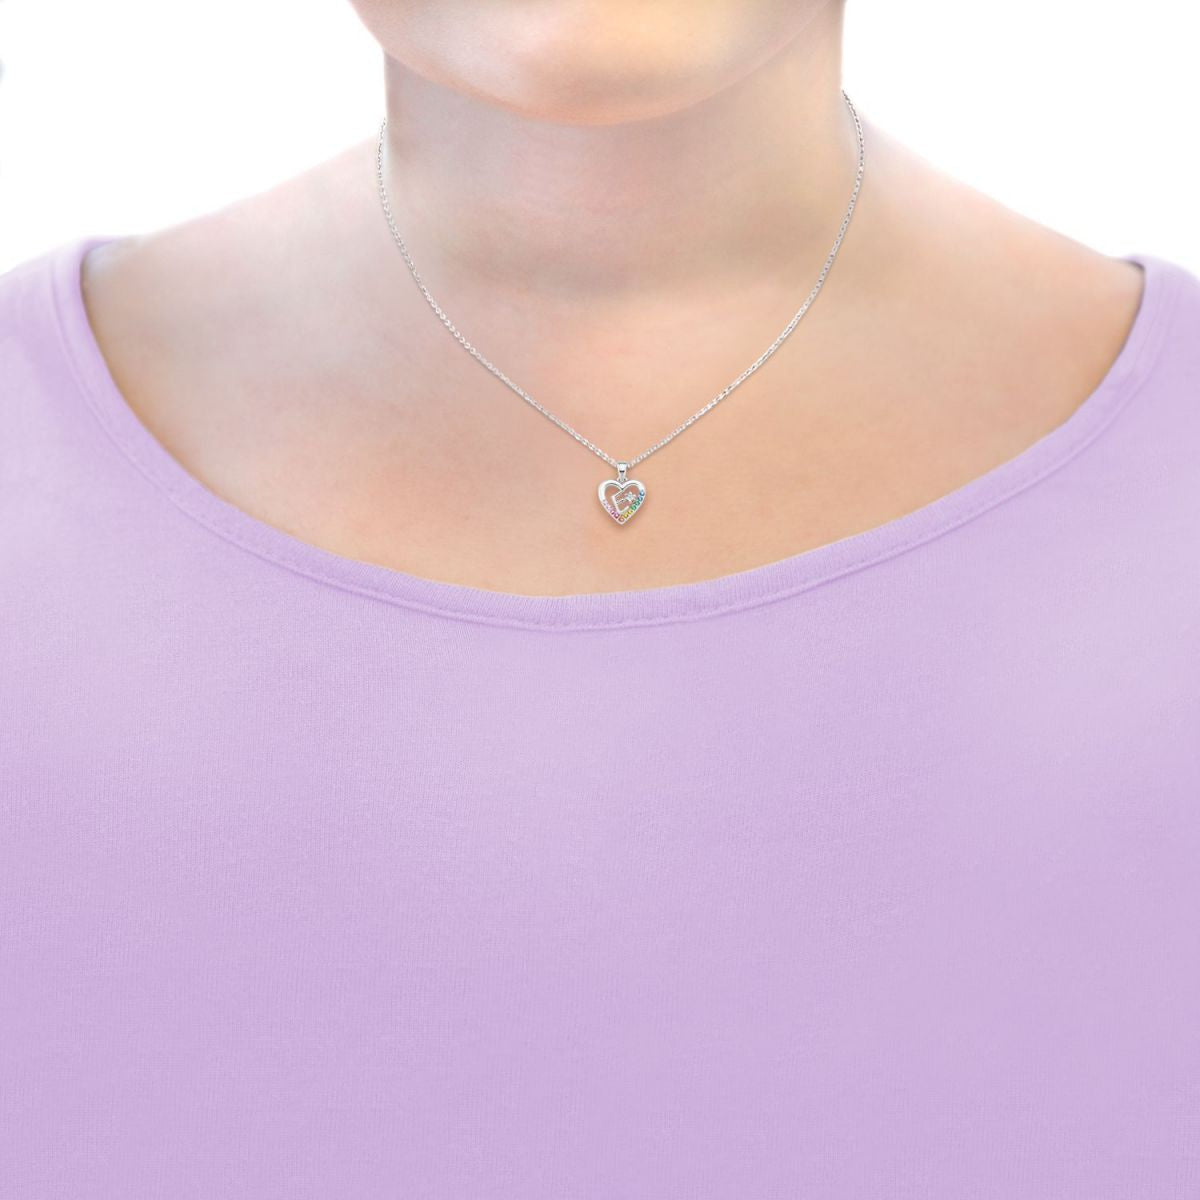 Preiswert24 Halskette – Mädchen E Kinder Buchstabenkette Lillifee Prinzessin Silber